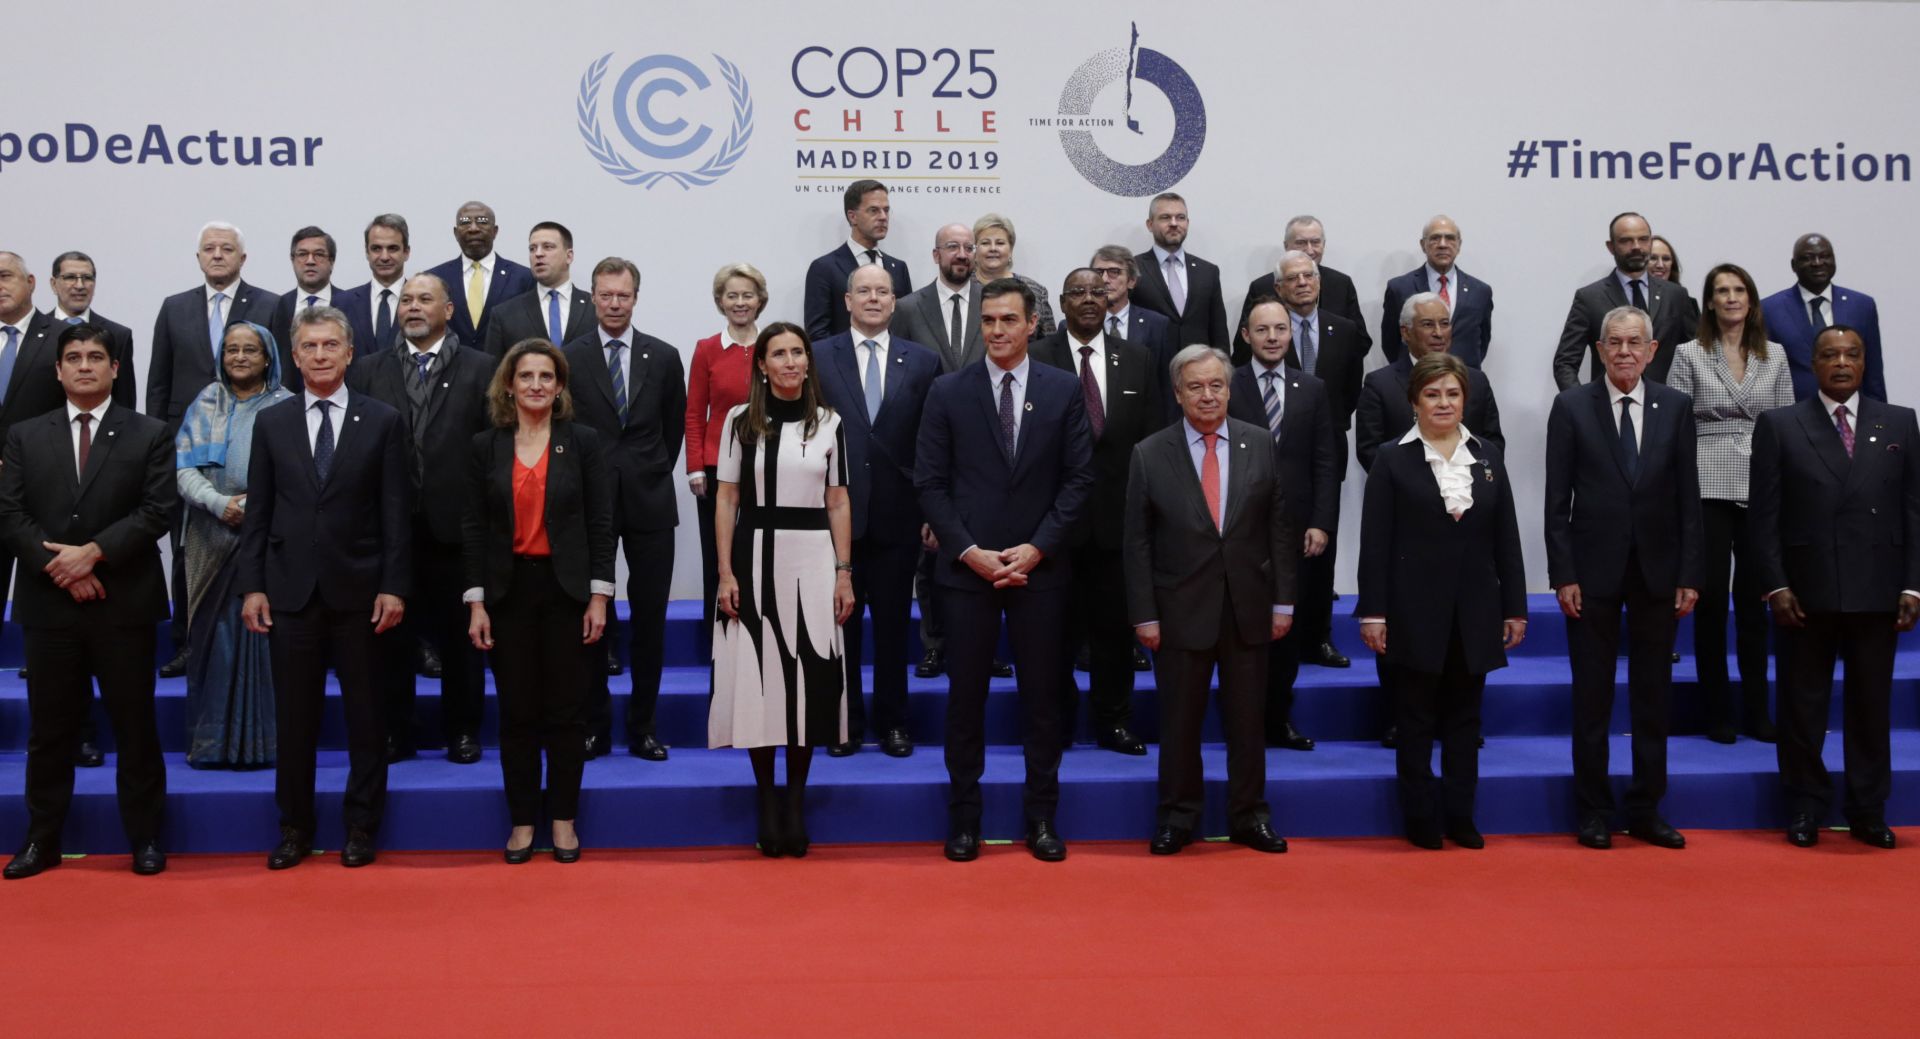 Световните лидери, събрали се в Мадрид на организираната от ООН конференция за изменението на климата, обещаха зелена революция